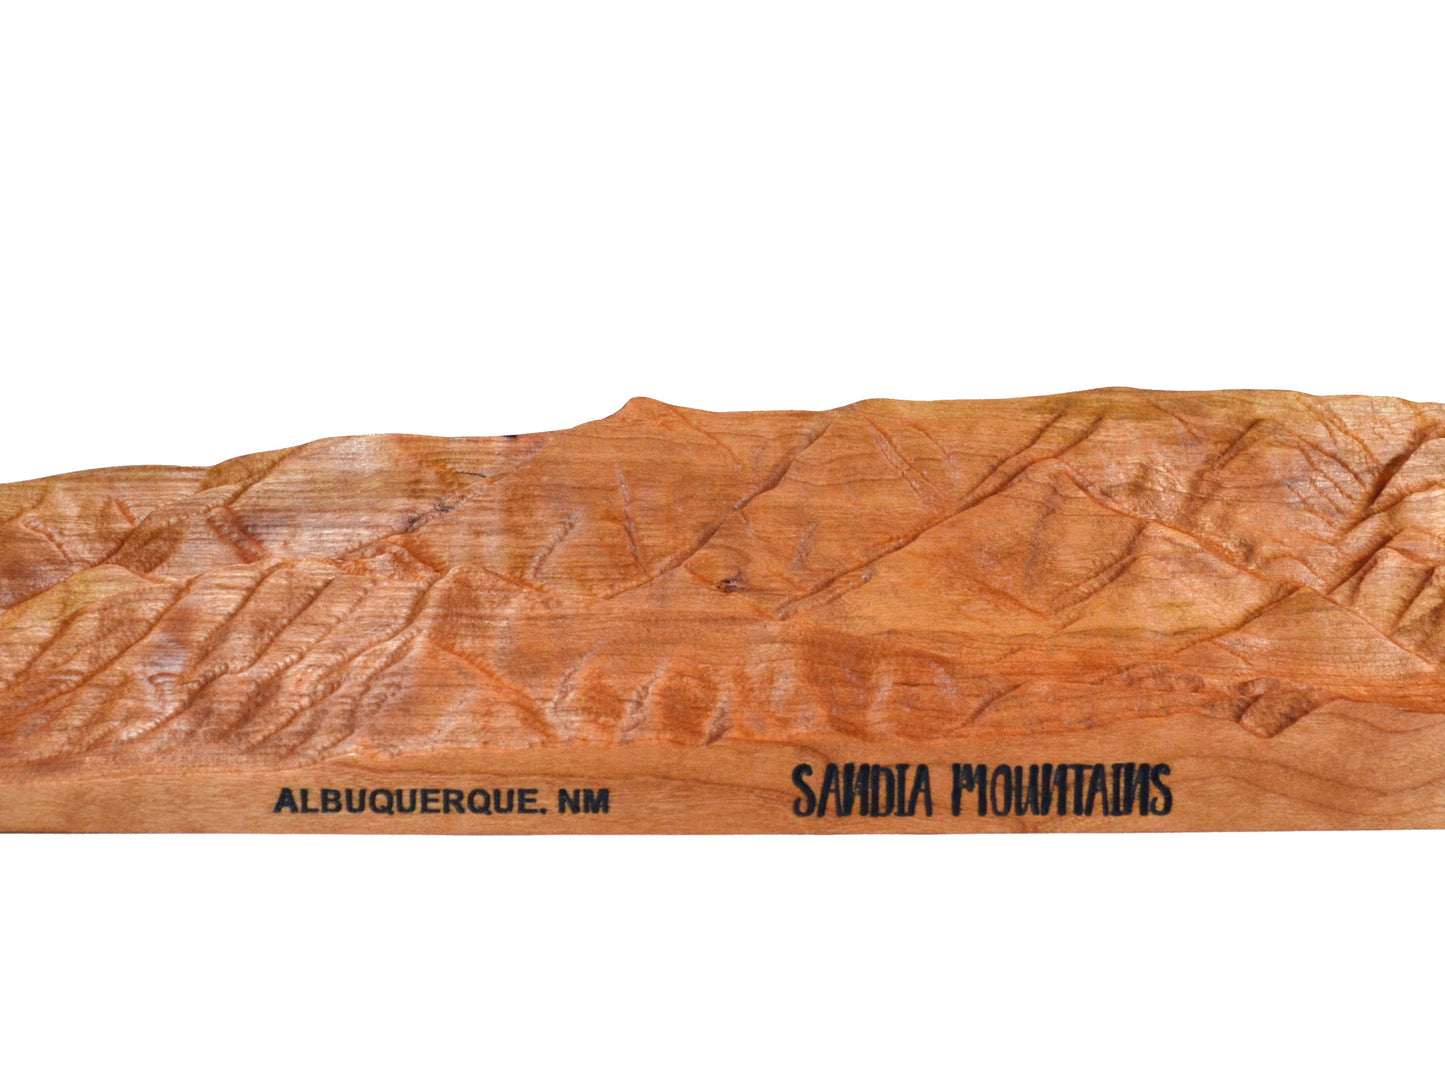 albuquerque nm mountain view wooden mountain carving